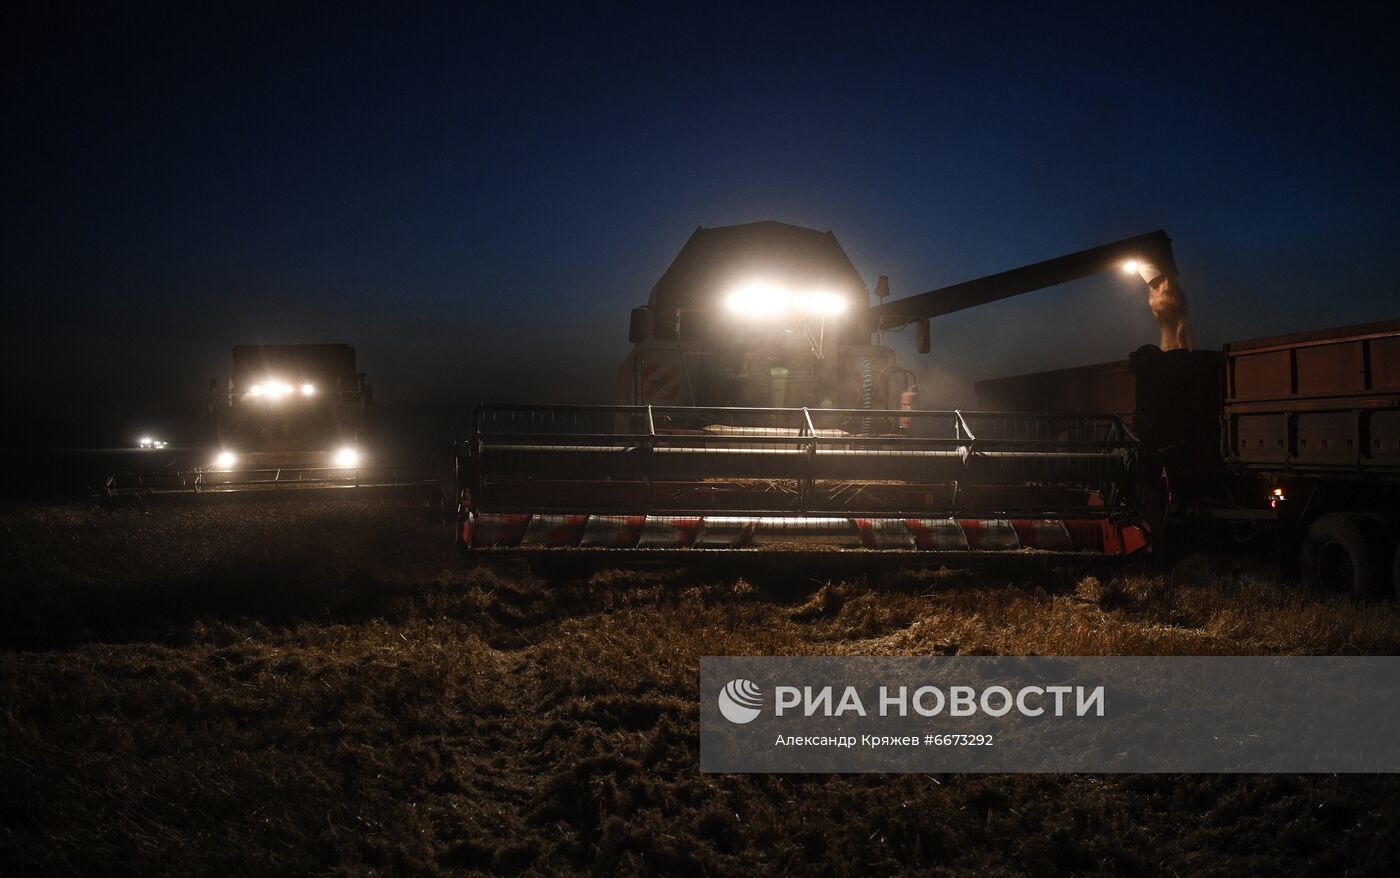 Сбор урожая в Новосибирской области